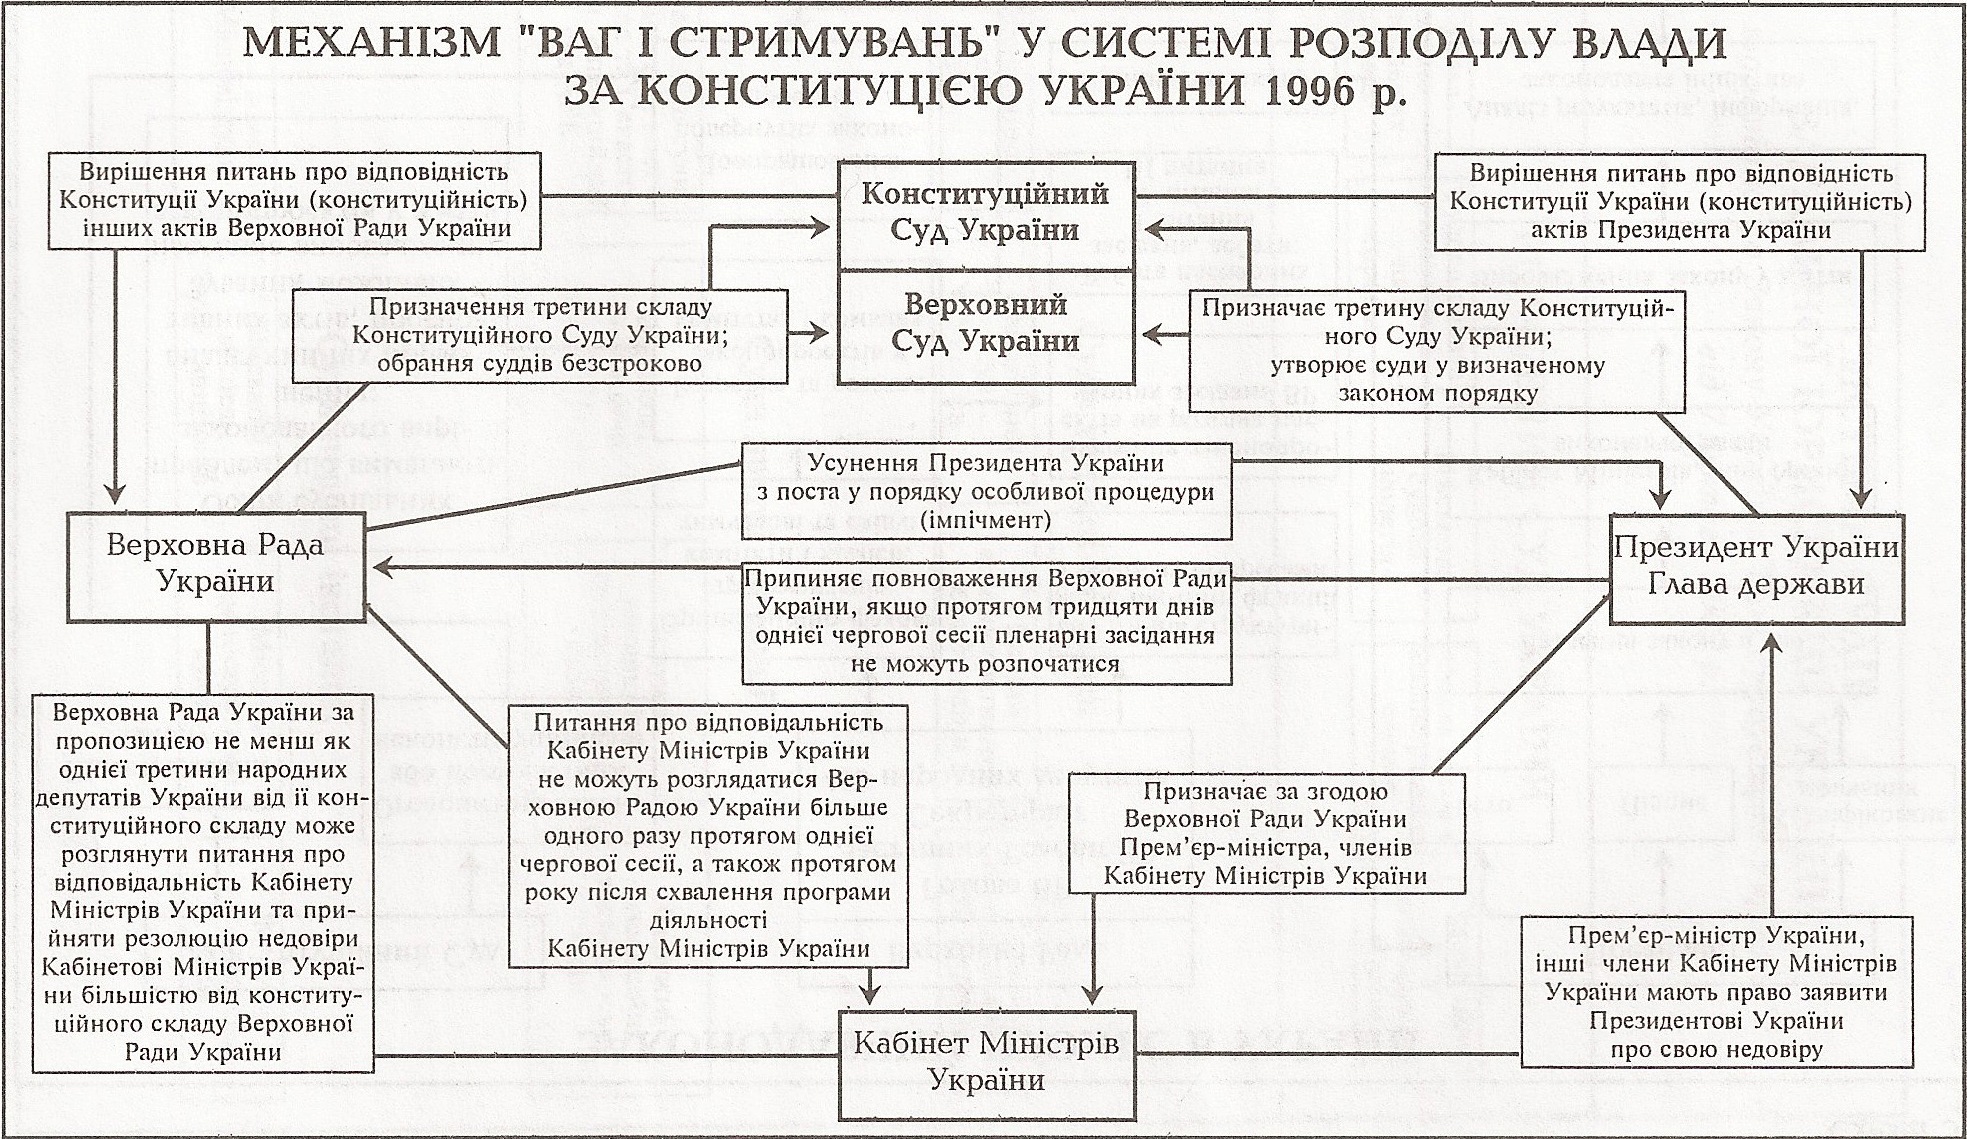 Таблица: Механизм Сдержек и Противовесов в системе разделения властей по Конституции Украины 1996 г